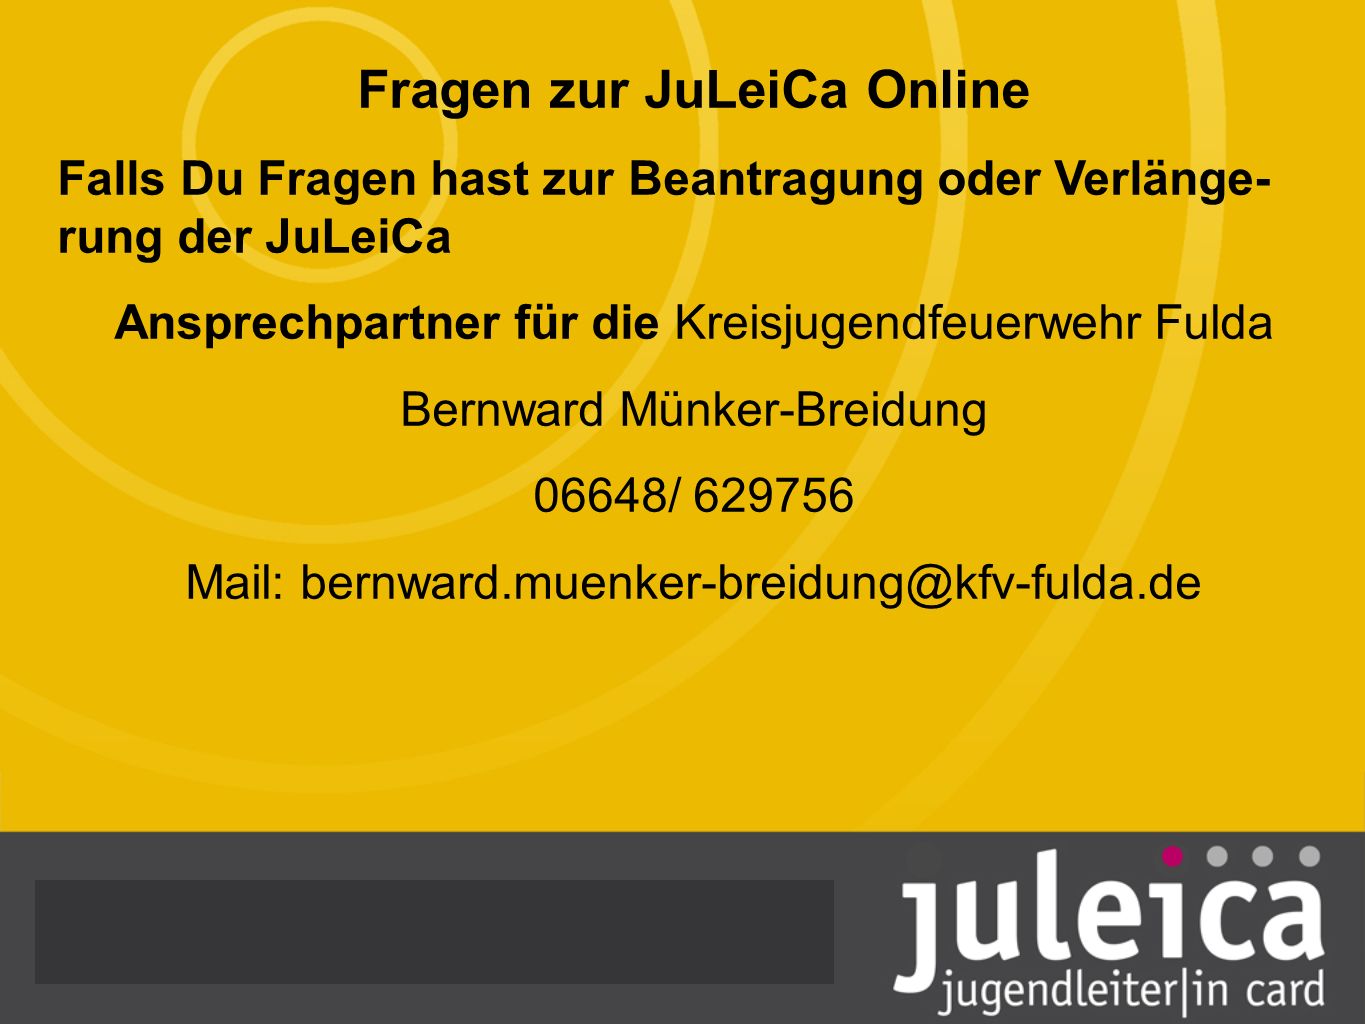 Fragen zur JuLeiCa Online Falls Du Fragen hast zur Beantragung oder Verlänge- rung der JuLeiCa Ansprechpartner für die Kreisjugendfeuerwehr Fulda Bernward Münker-Breidung 06648/ Mail: